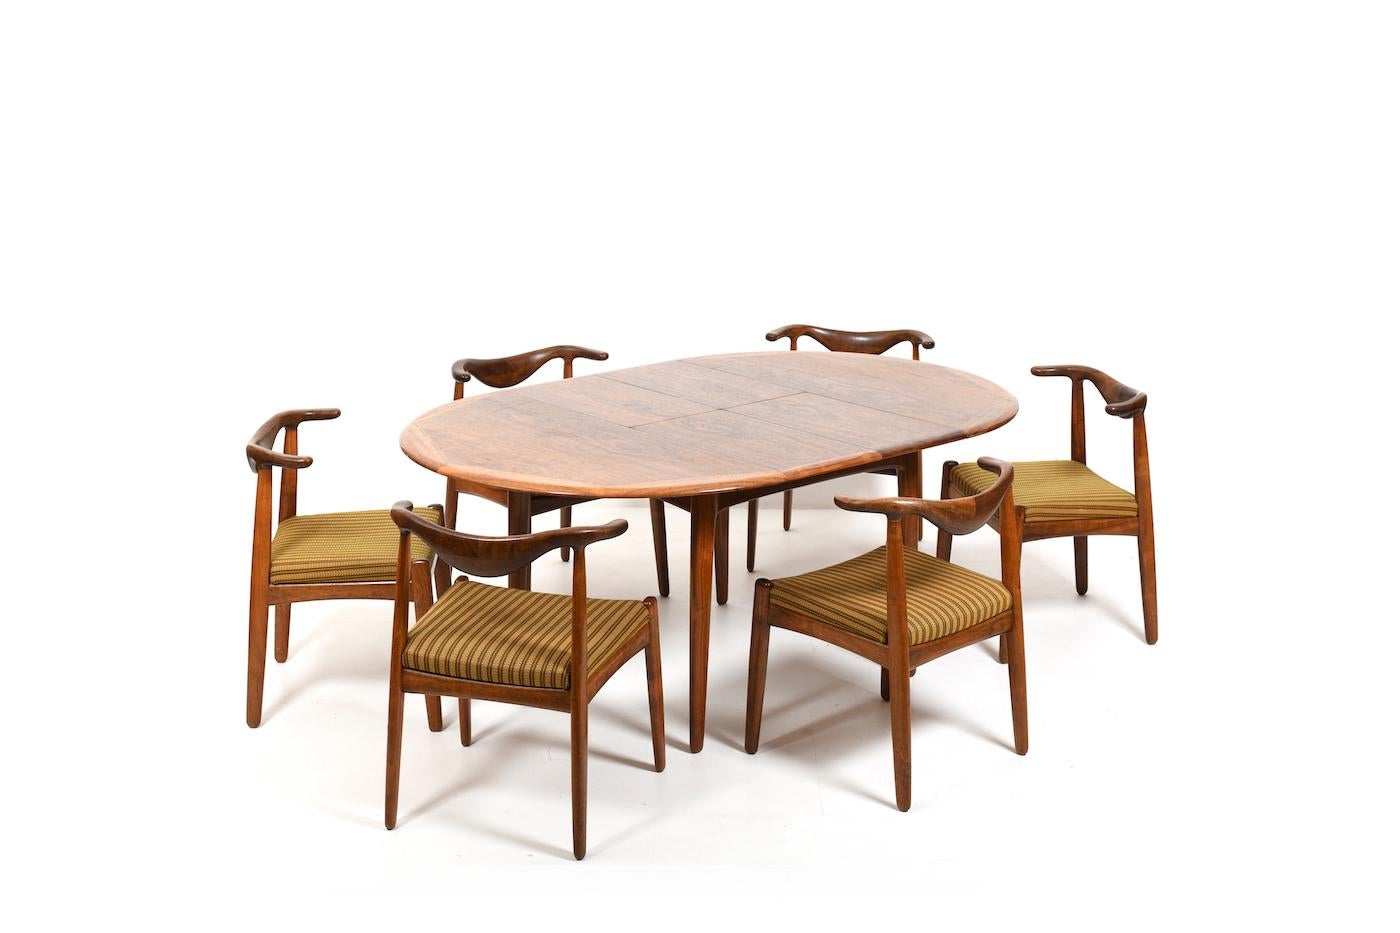 Très rare ensemble de salle à manger danois comprenant 6 chaises cowhorn, une table ronde / ovale et le meuble assorti par Svend Aage Madsen. L'ensemble est réalisé en noyer très fin. Table à feuilles rétractables permettant d'agrandir le plateau.